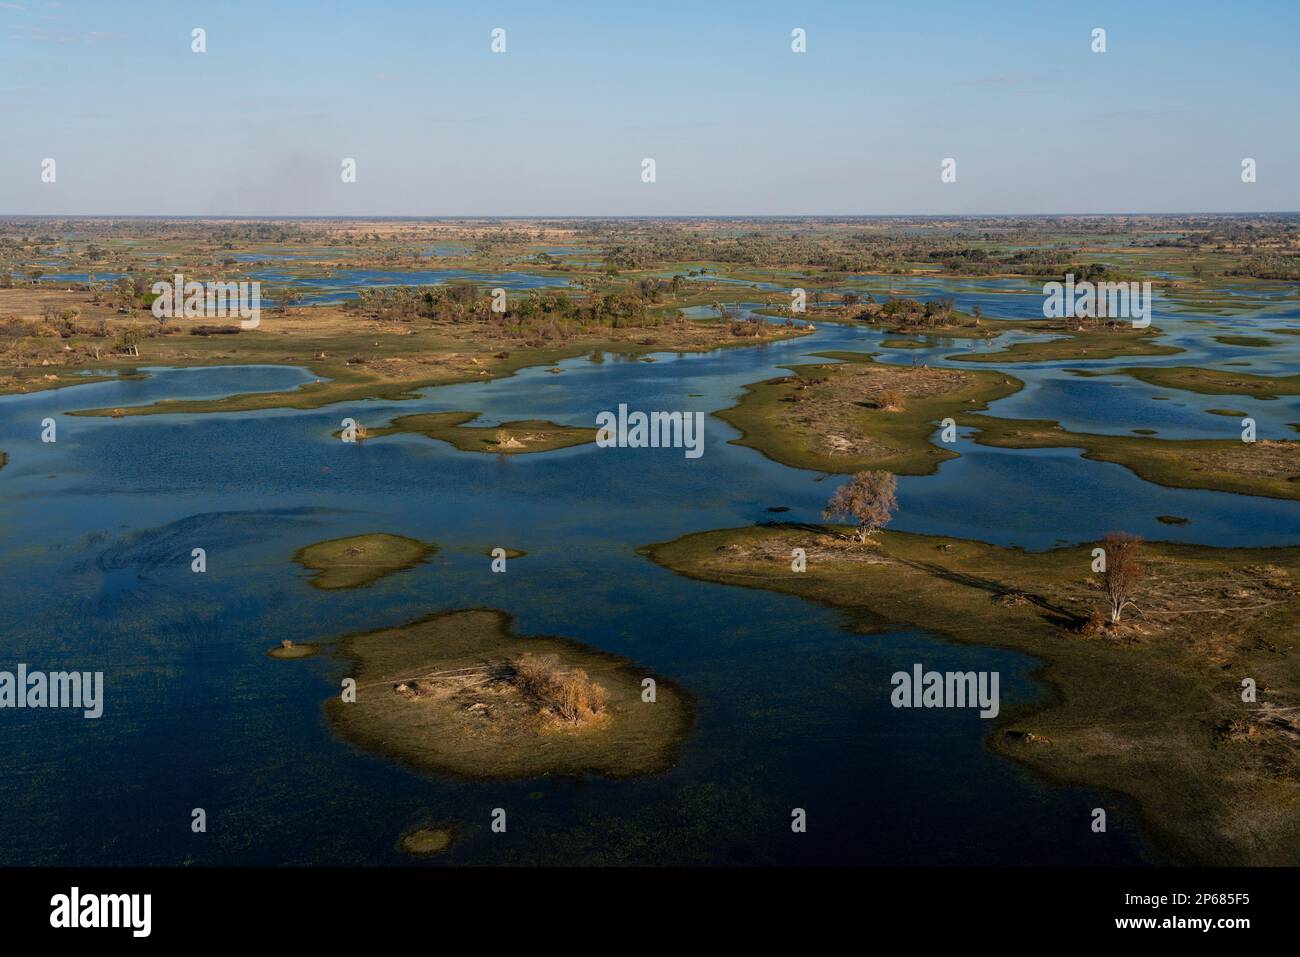 Veduta aerea del Delta dell'Okavango, patrimonio dell'umanità dell'UNESCO, Botswana, Africa Foto Stock